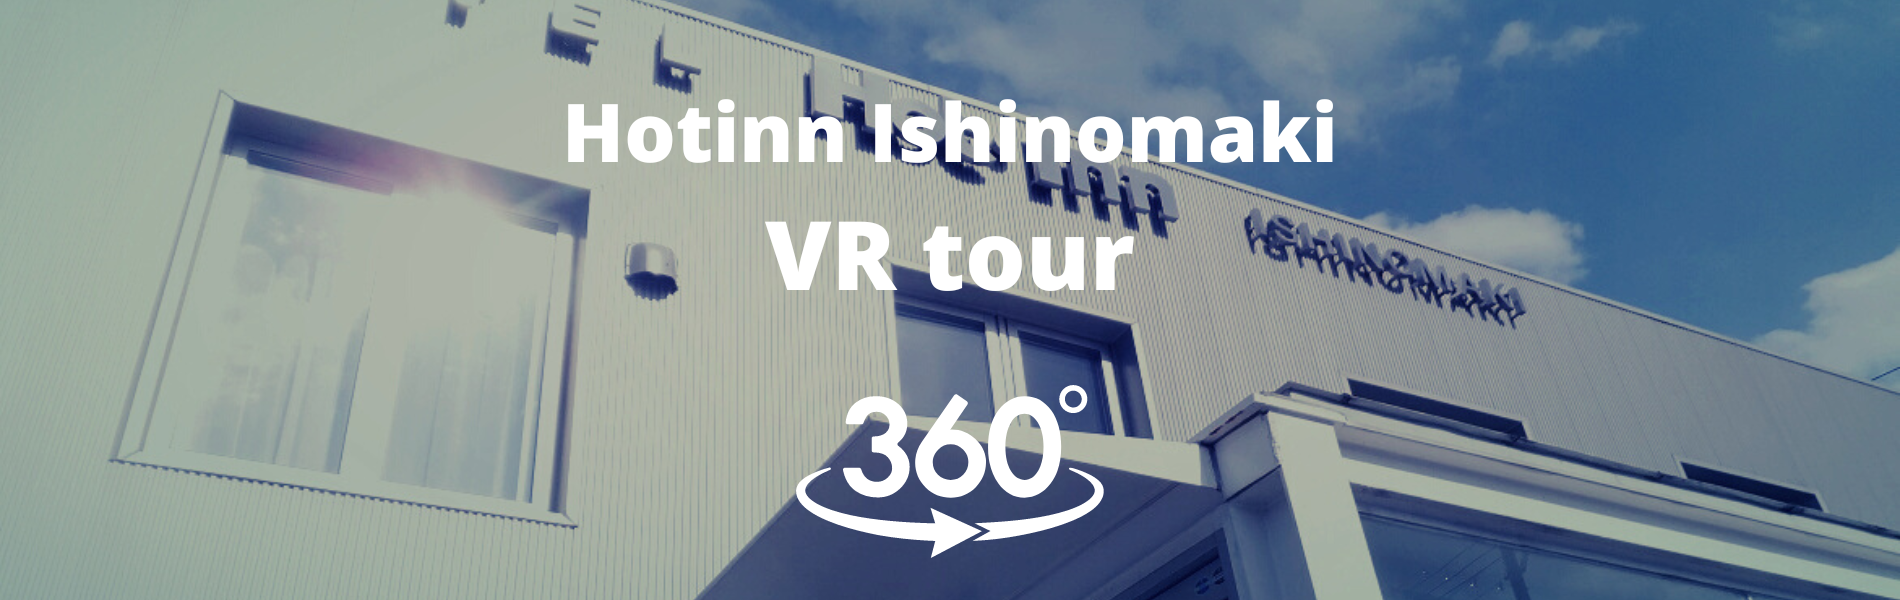 ホットイン石巻VR体験実施中です。360度見渡せます